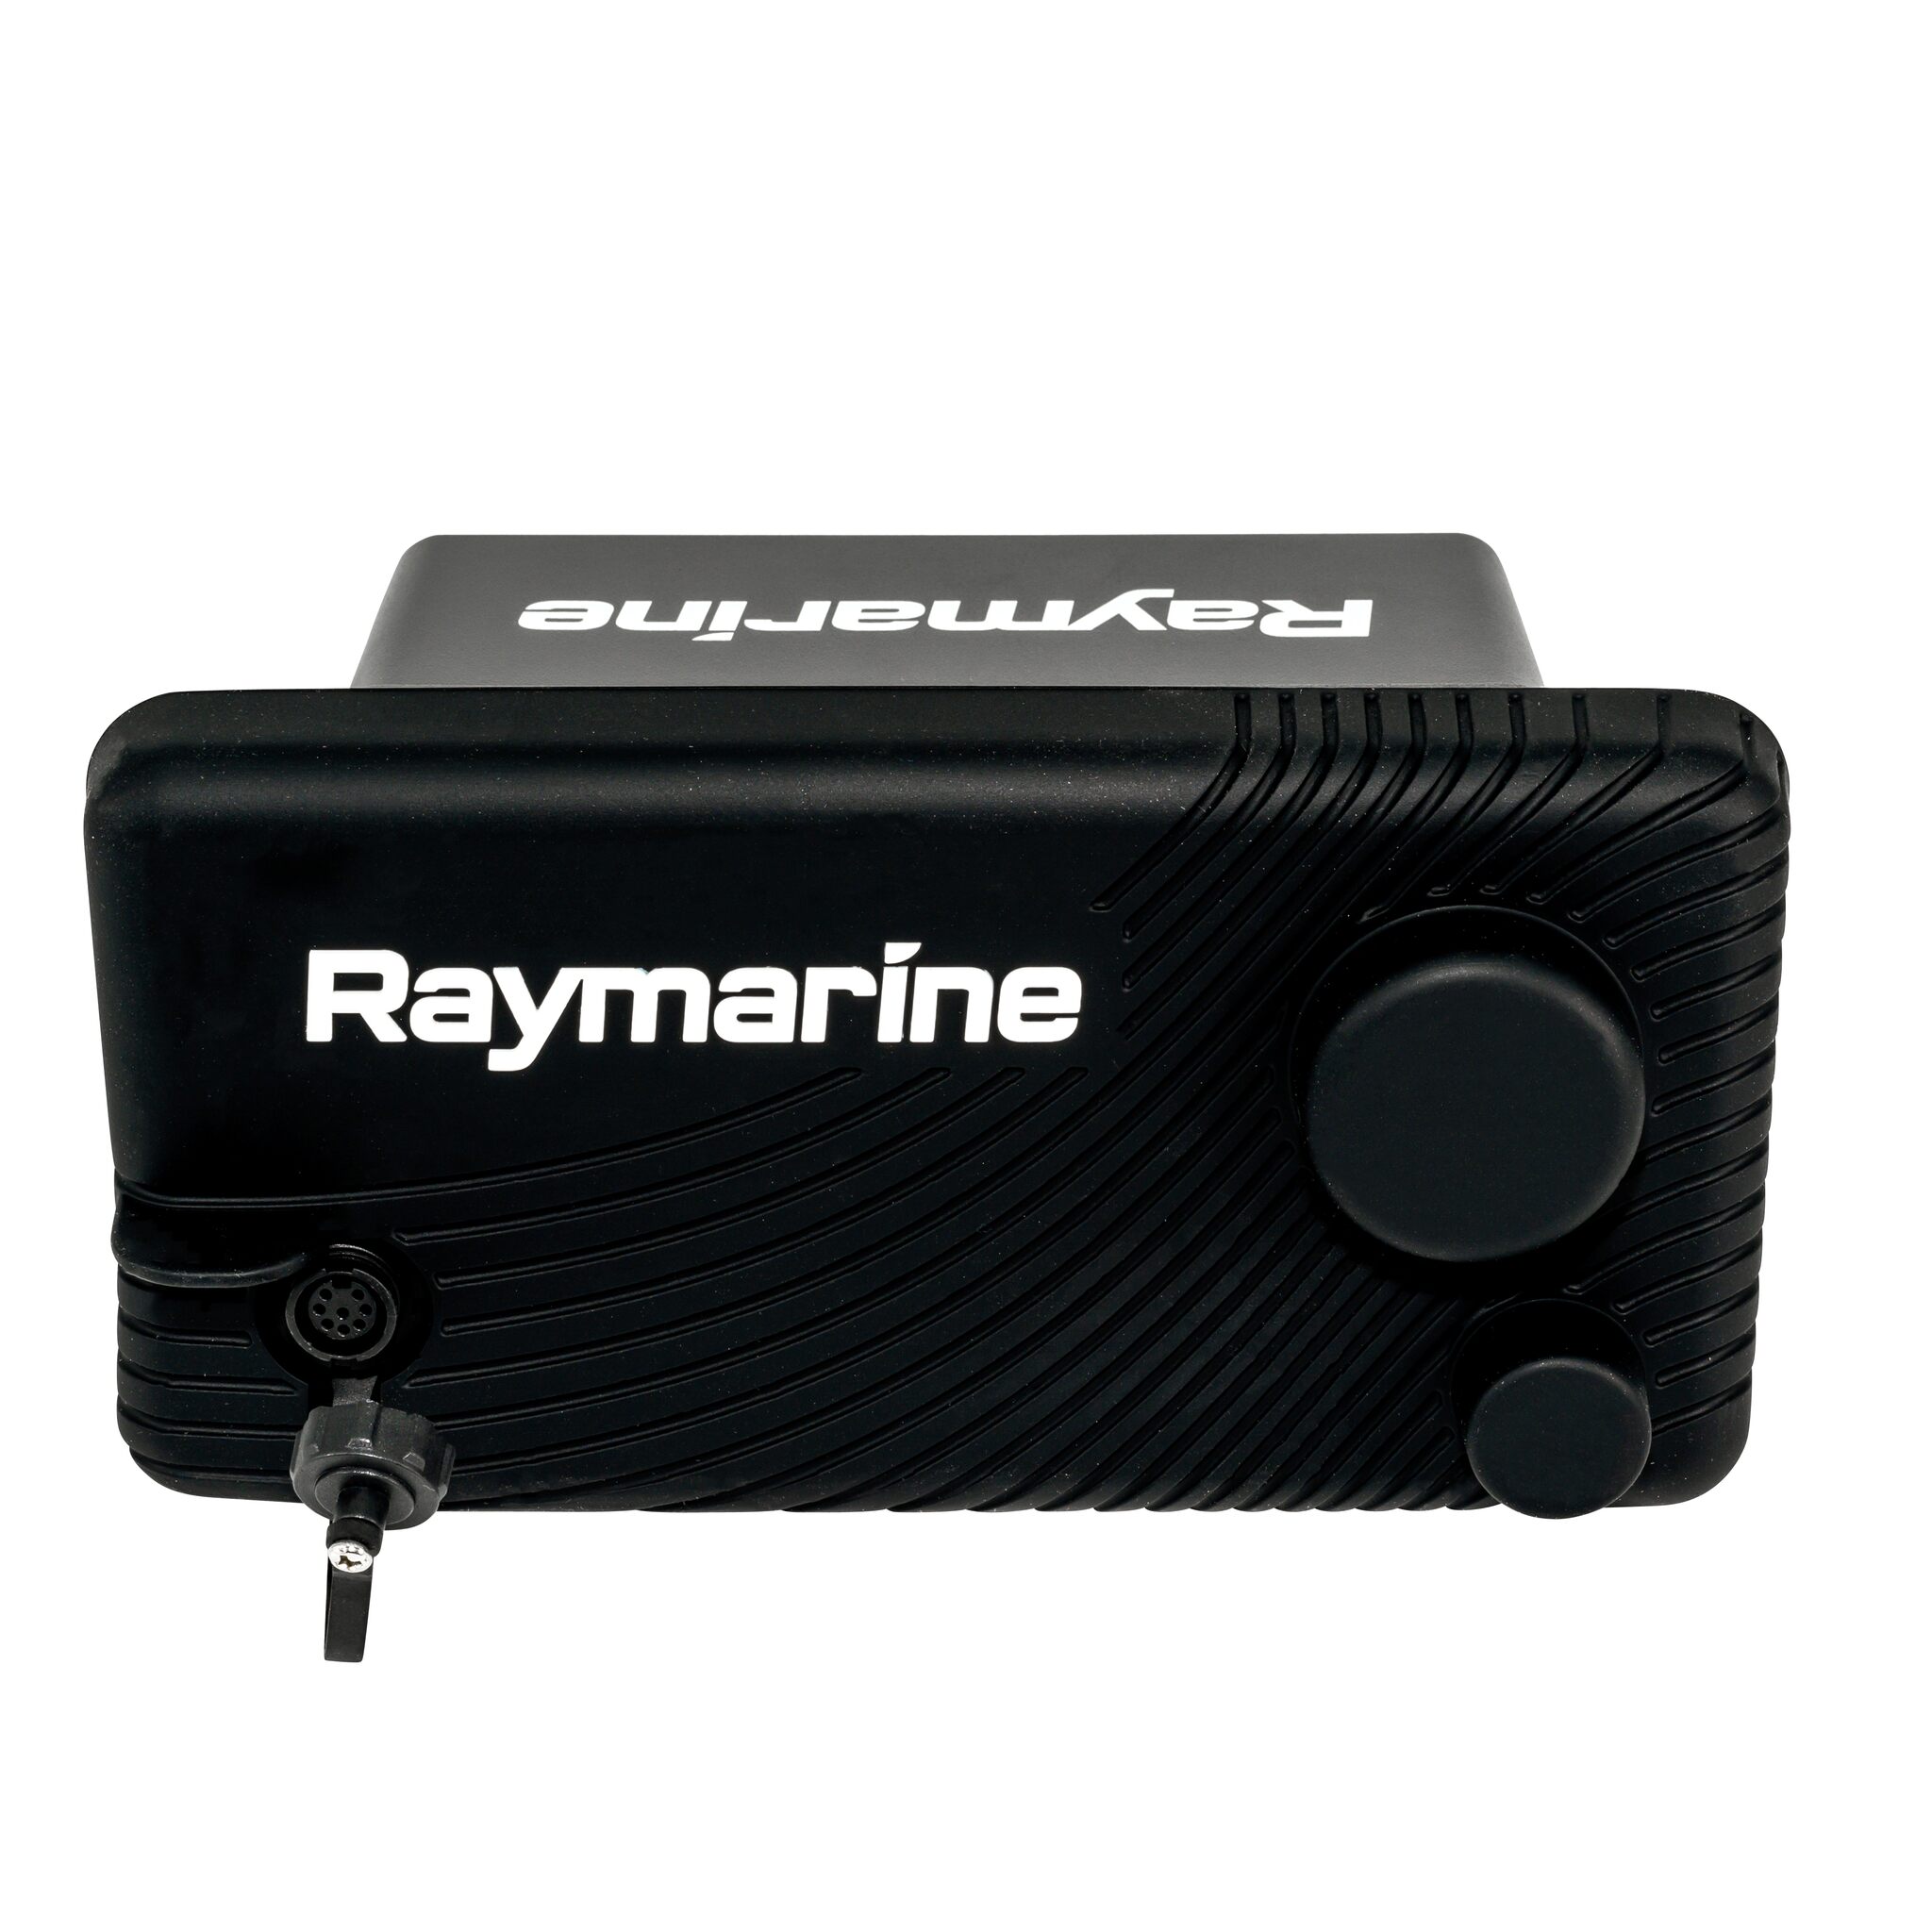 Raymarine VHF marine radio Ray73